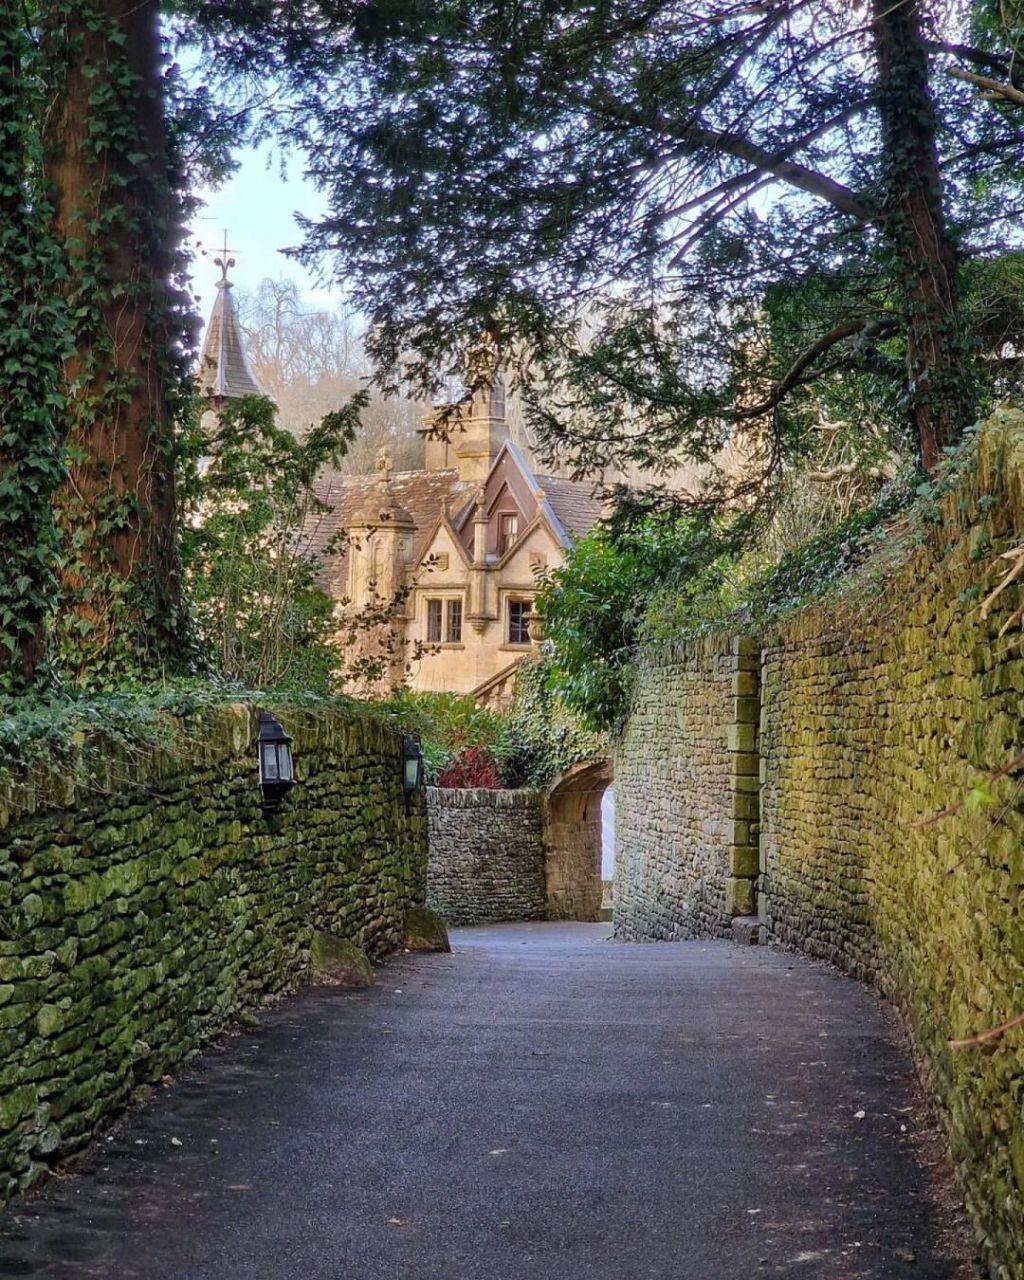 英国最美村庄之一 库姆堡是英国科兹沃尔茨丘陵地带南部的一个村庄